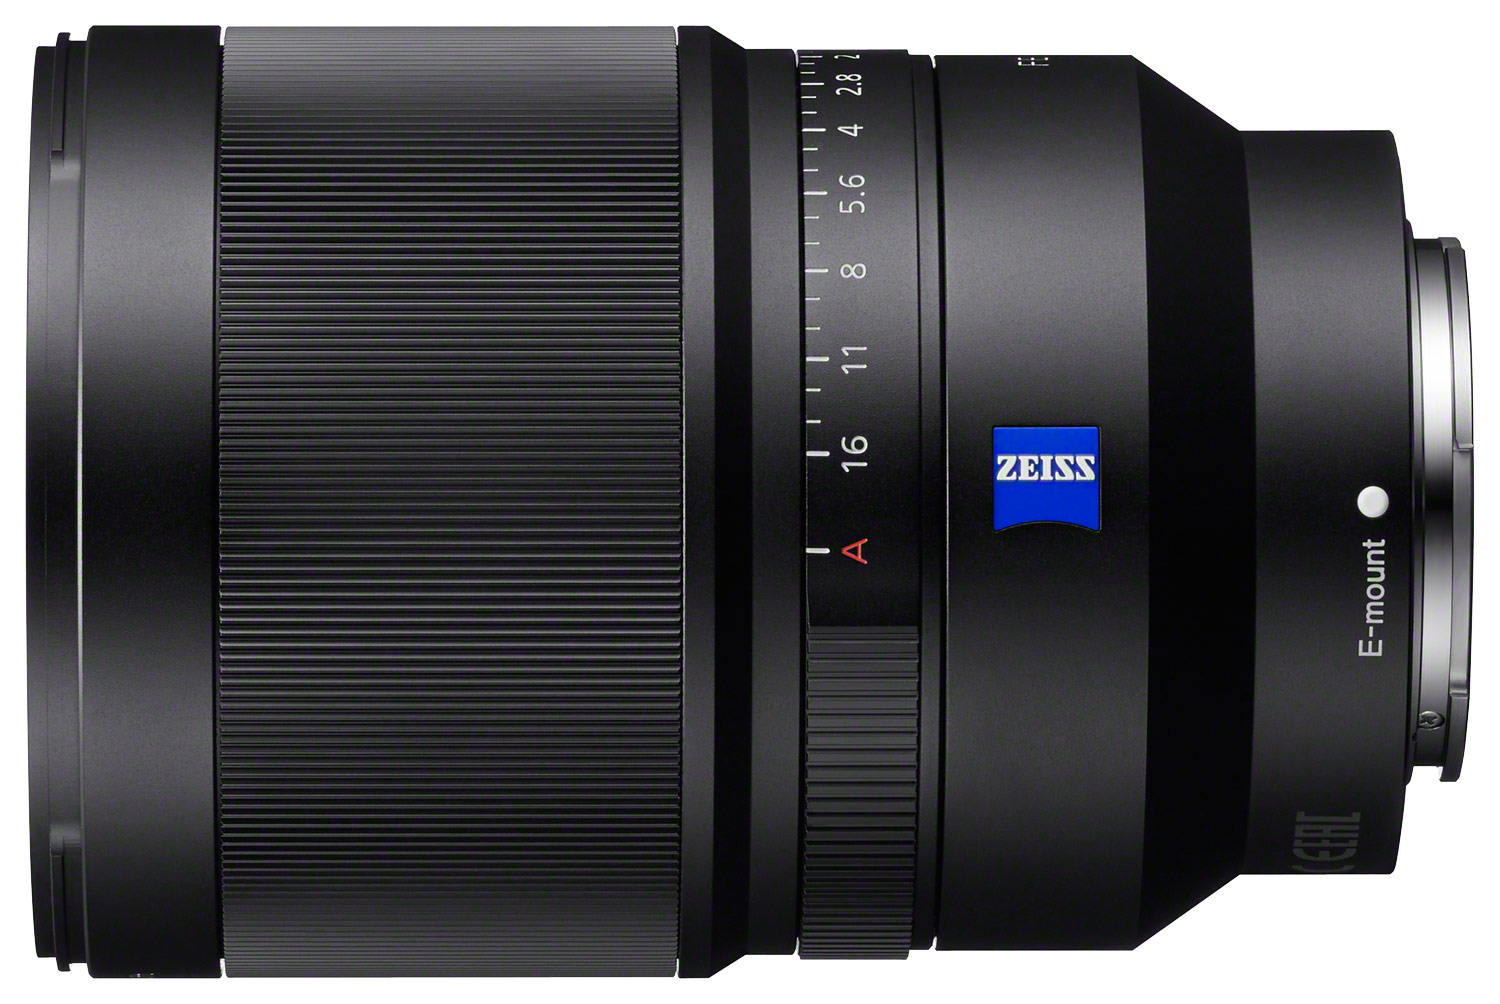 Sony Distagon T* FE 35mm f/1.4 ZA Full-Frame E-Mount Prime Lens 